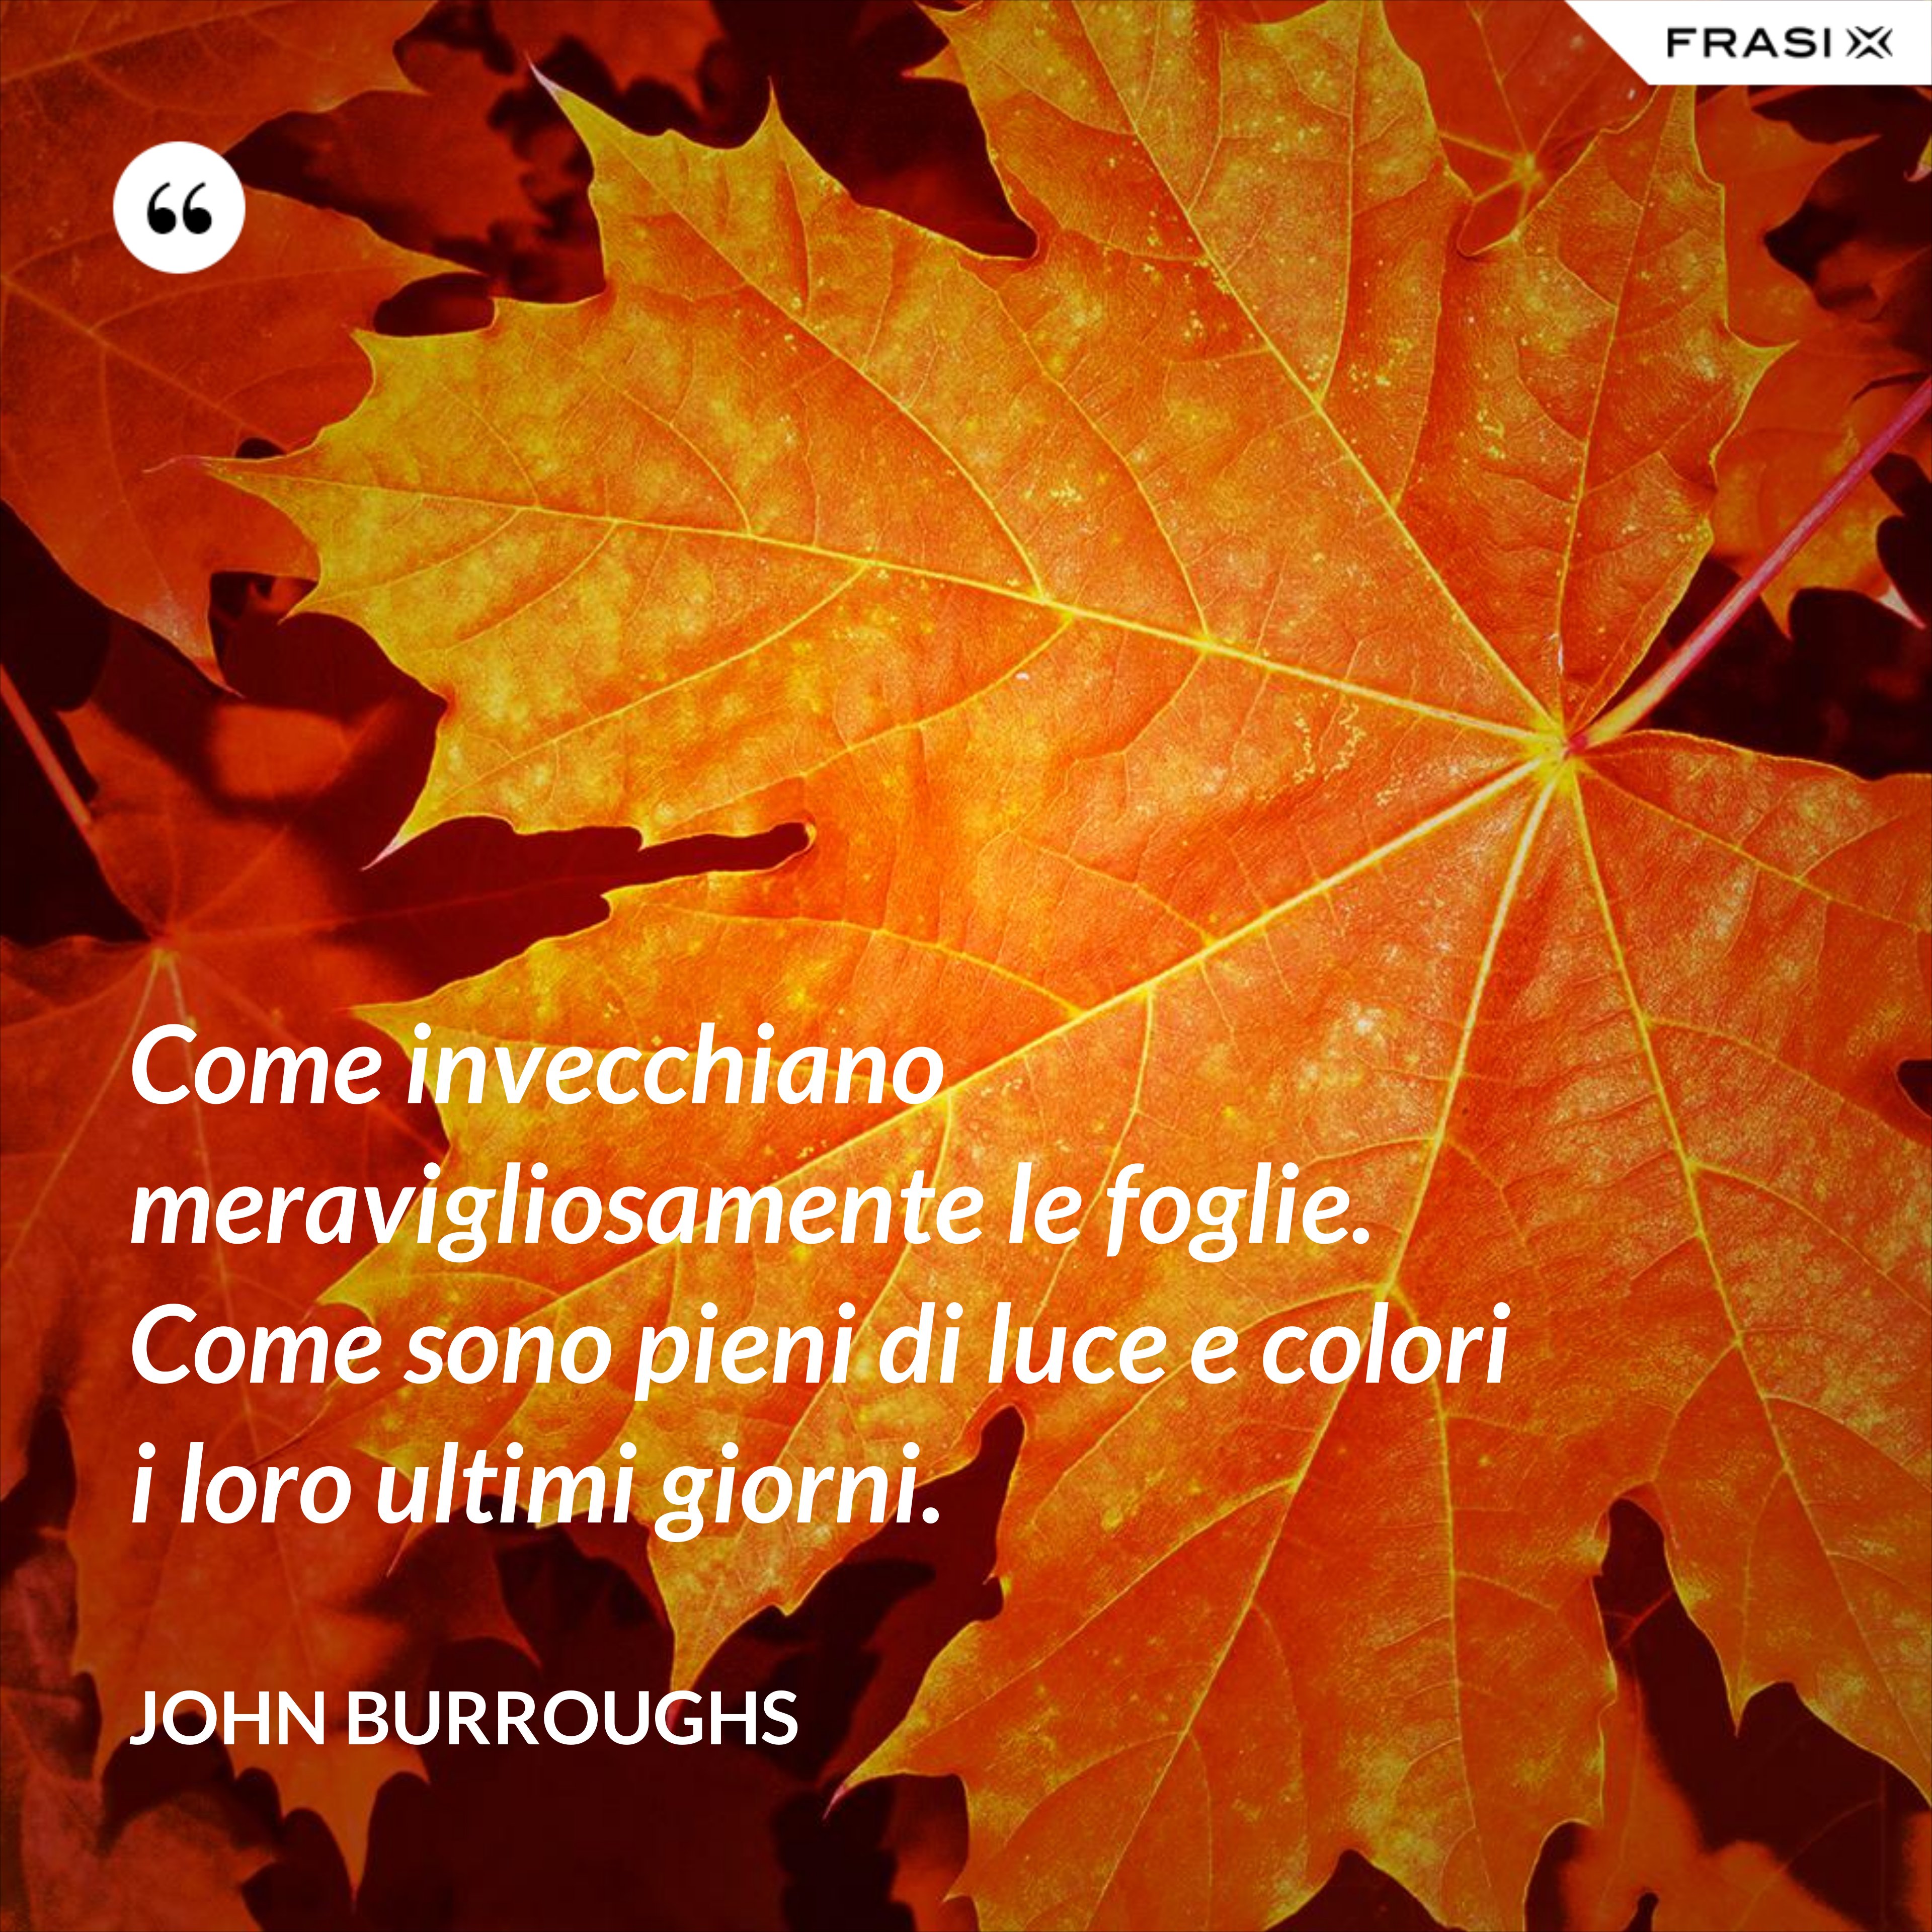 Come invecchiano meravigliosamente le foglie. Come sono pieni di luce e colori i loro ultimi giorni. - John Burroughs